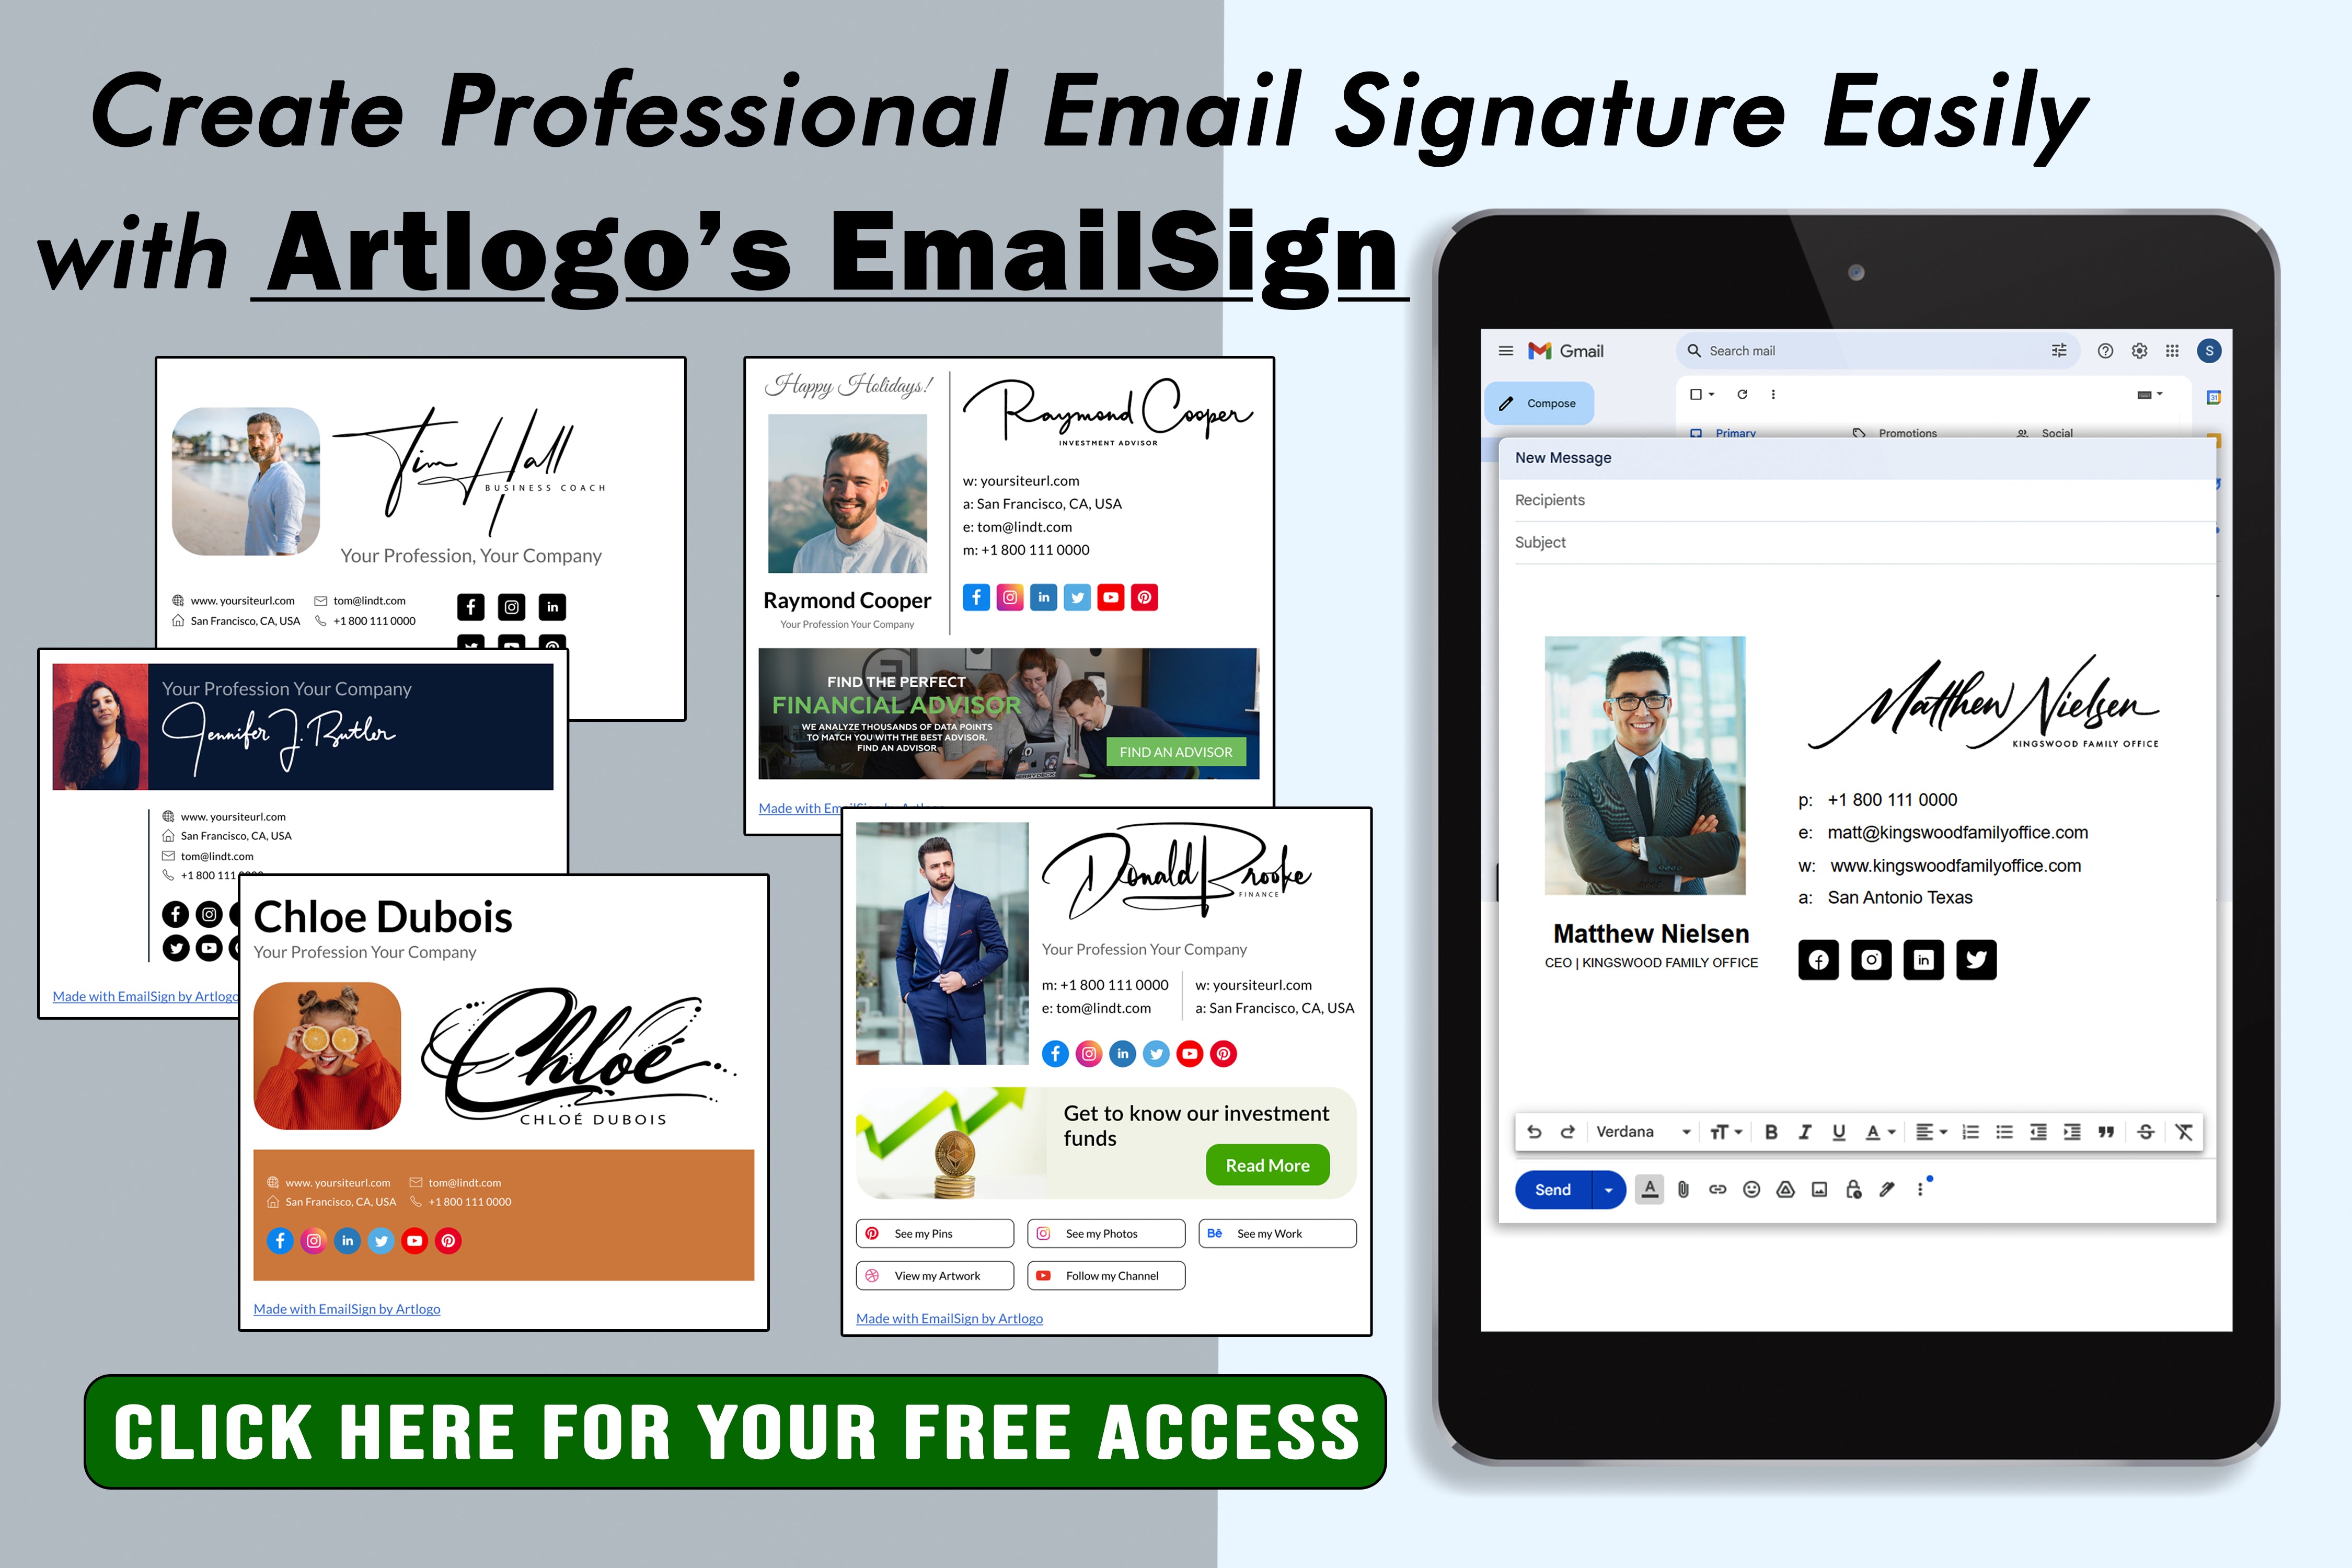 Immergiti nel mondo delle firme e-mail e impara a creare una firma unica e professionale che ti distingua nello spazio digitale.